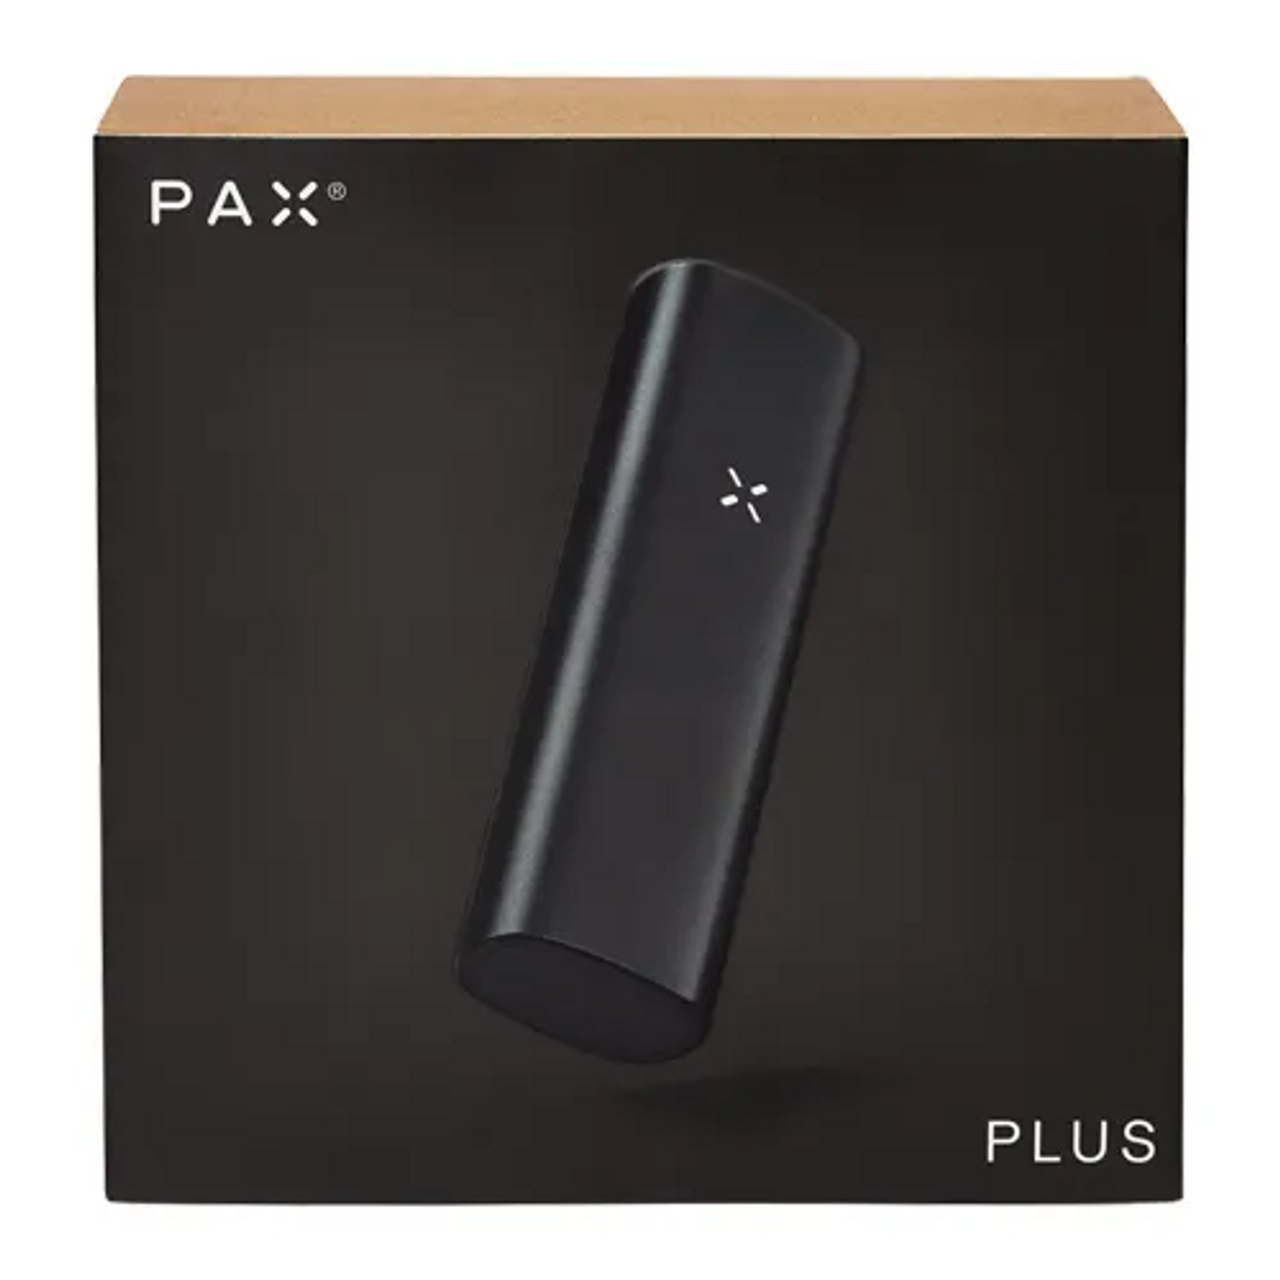 Shop PAX Plus Vaporizer - PuffItUp!